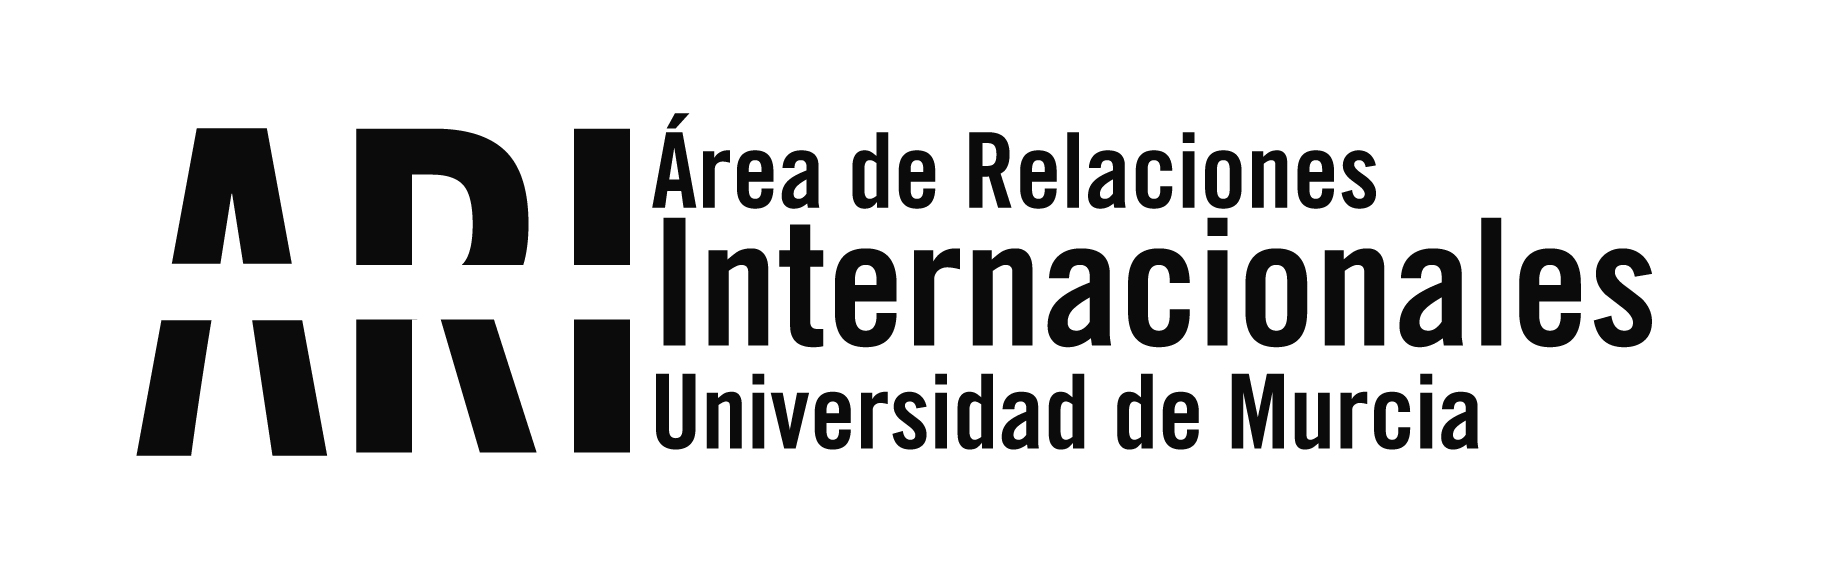 Motorhome Santander Universidades Generación Encontrada en el Campus de Espinardo del 21 al 23 de abril - Área de Relaciones Internacionales